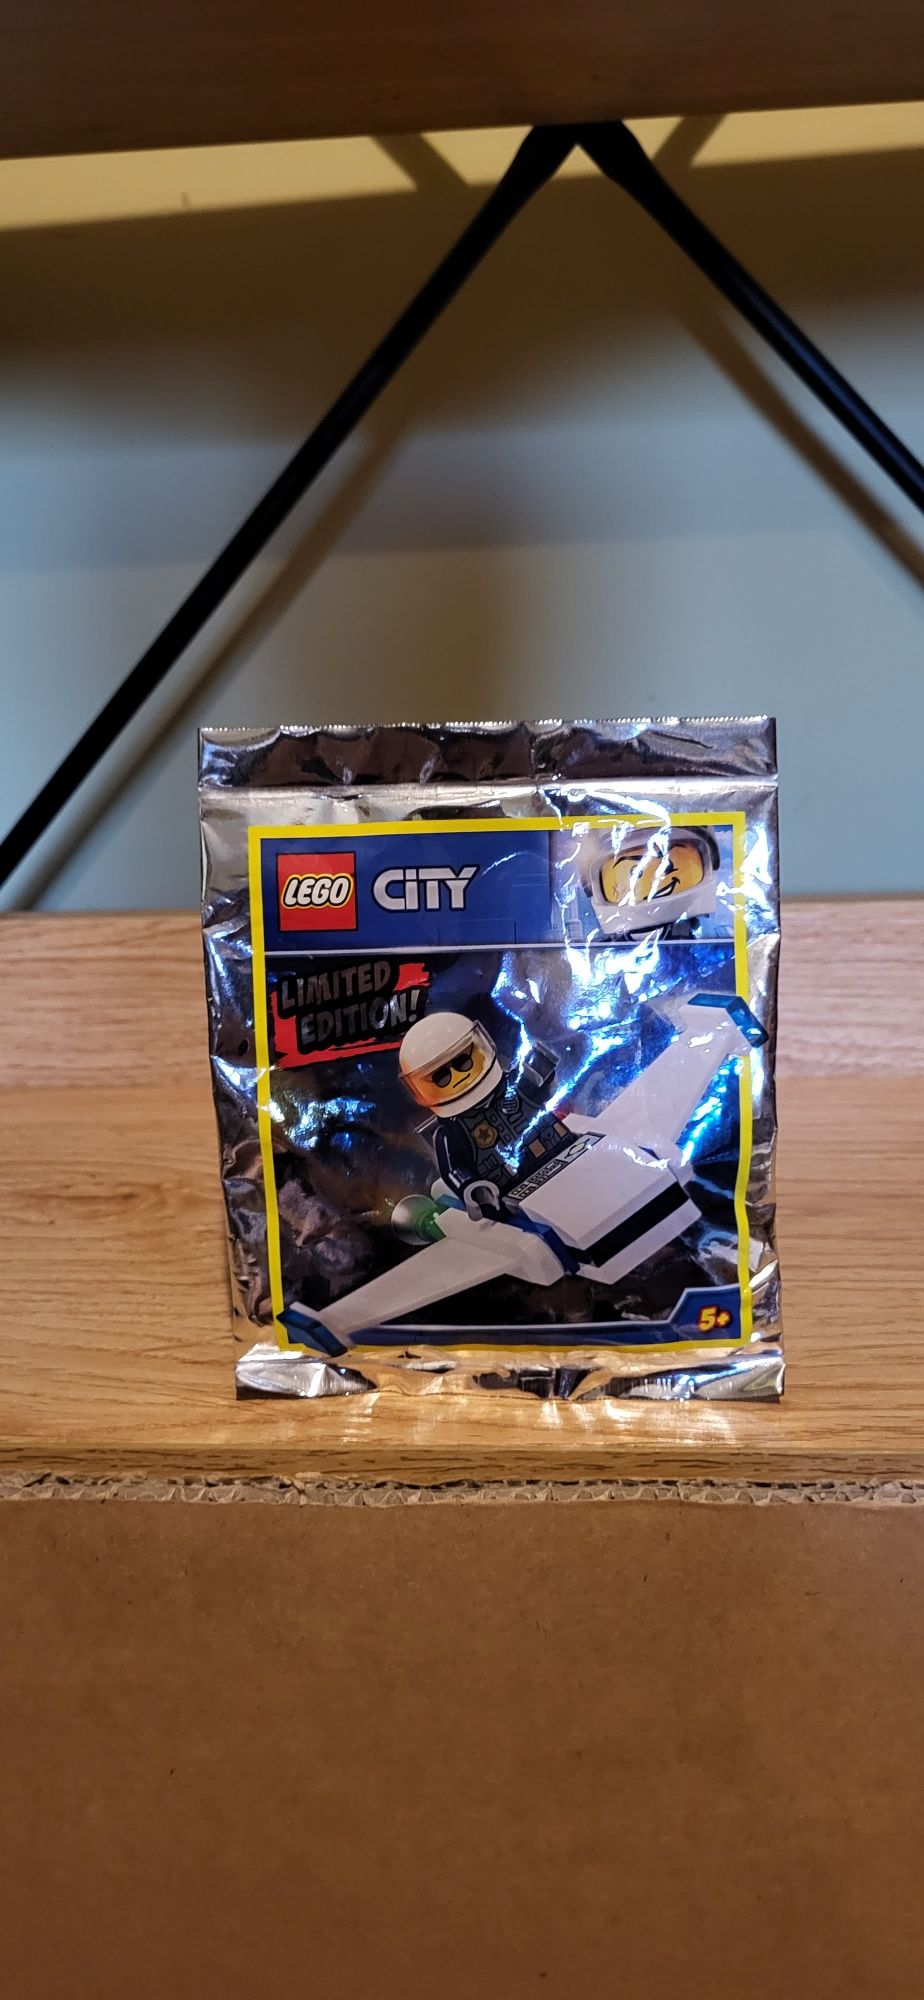 Lego City 951901 Policjant I Minijet saszetka z klockami